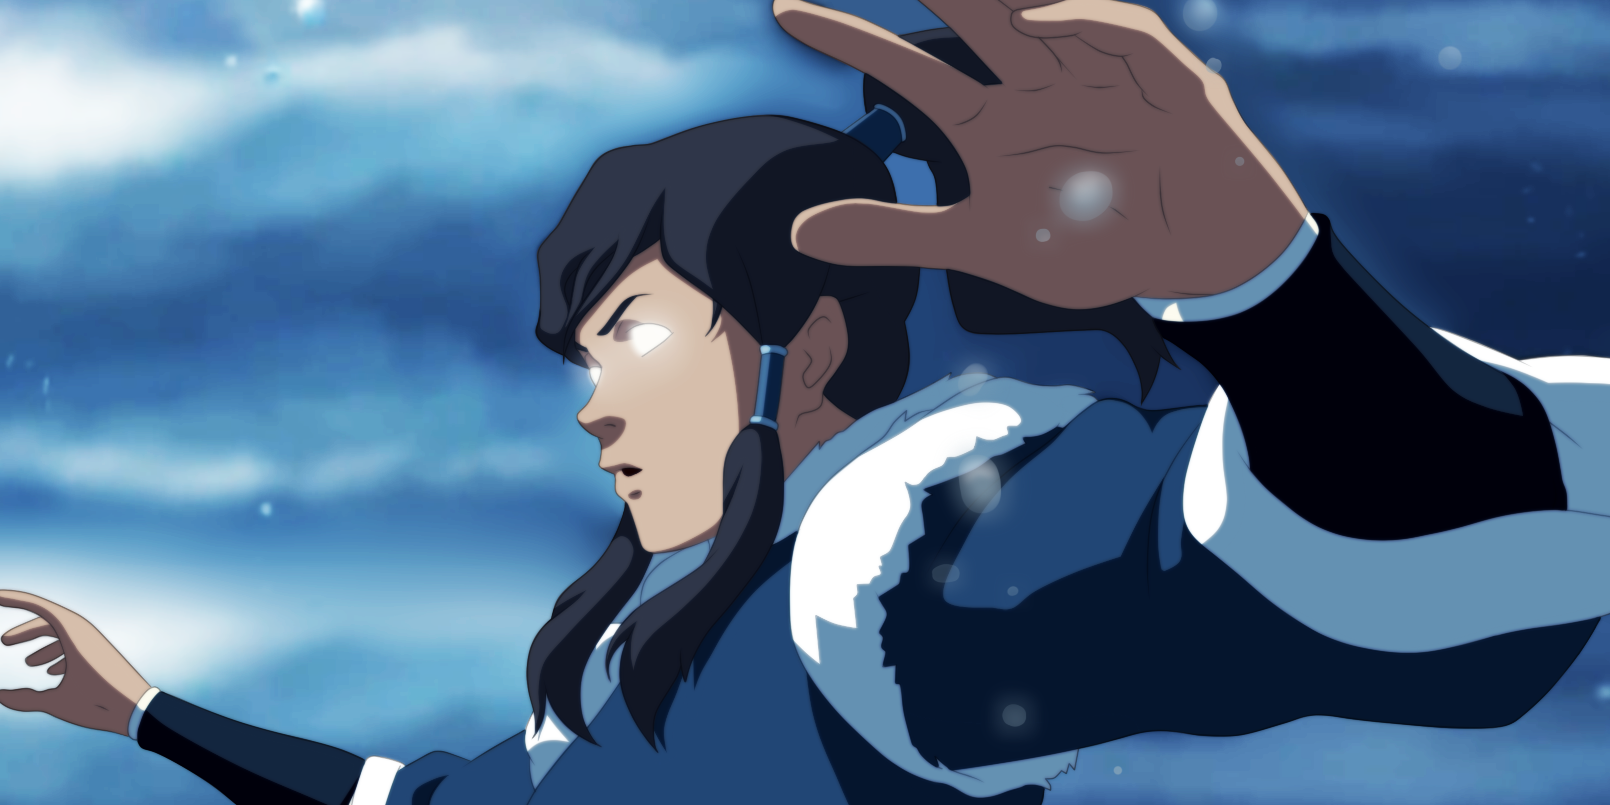 A lo largo de su serie, Korra muestra un completo dominio del Estado Avatar